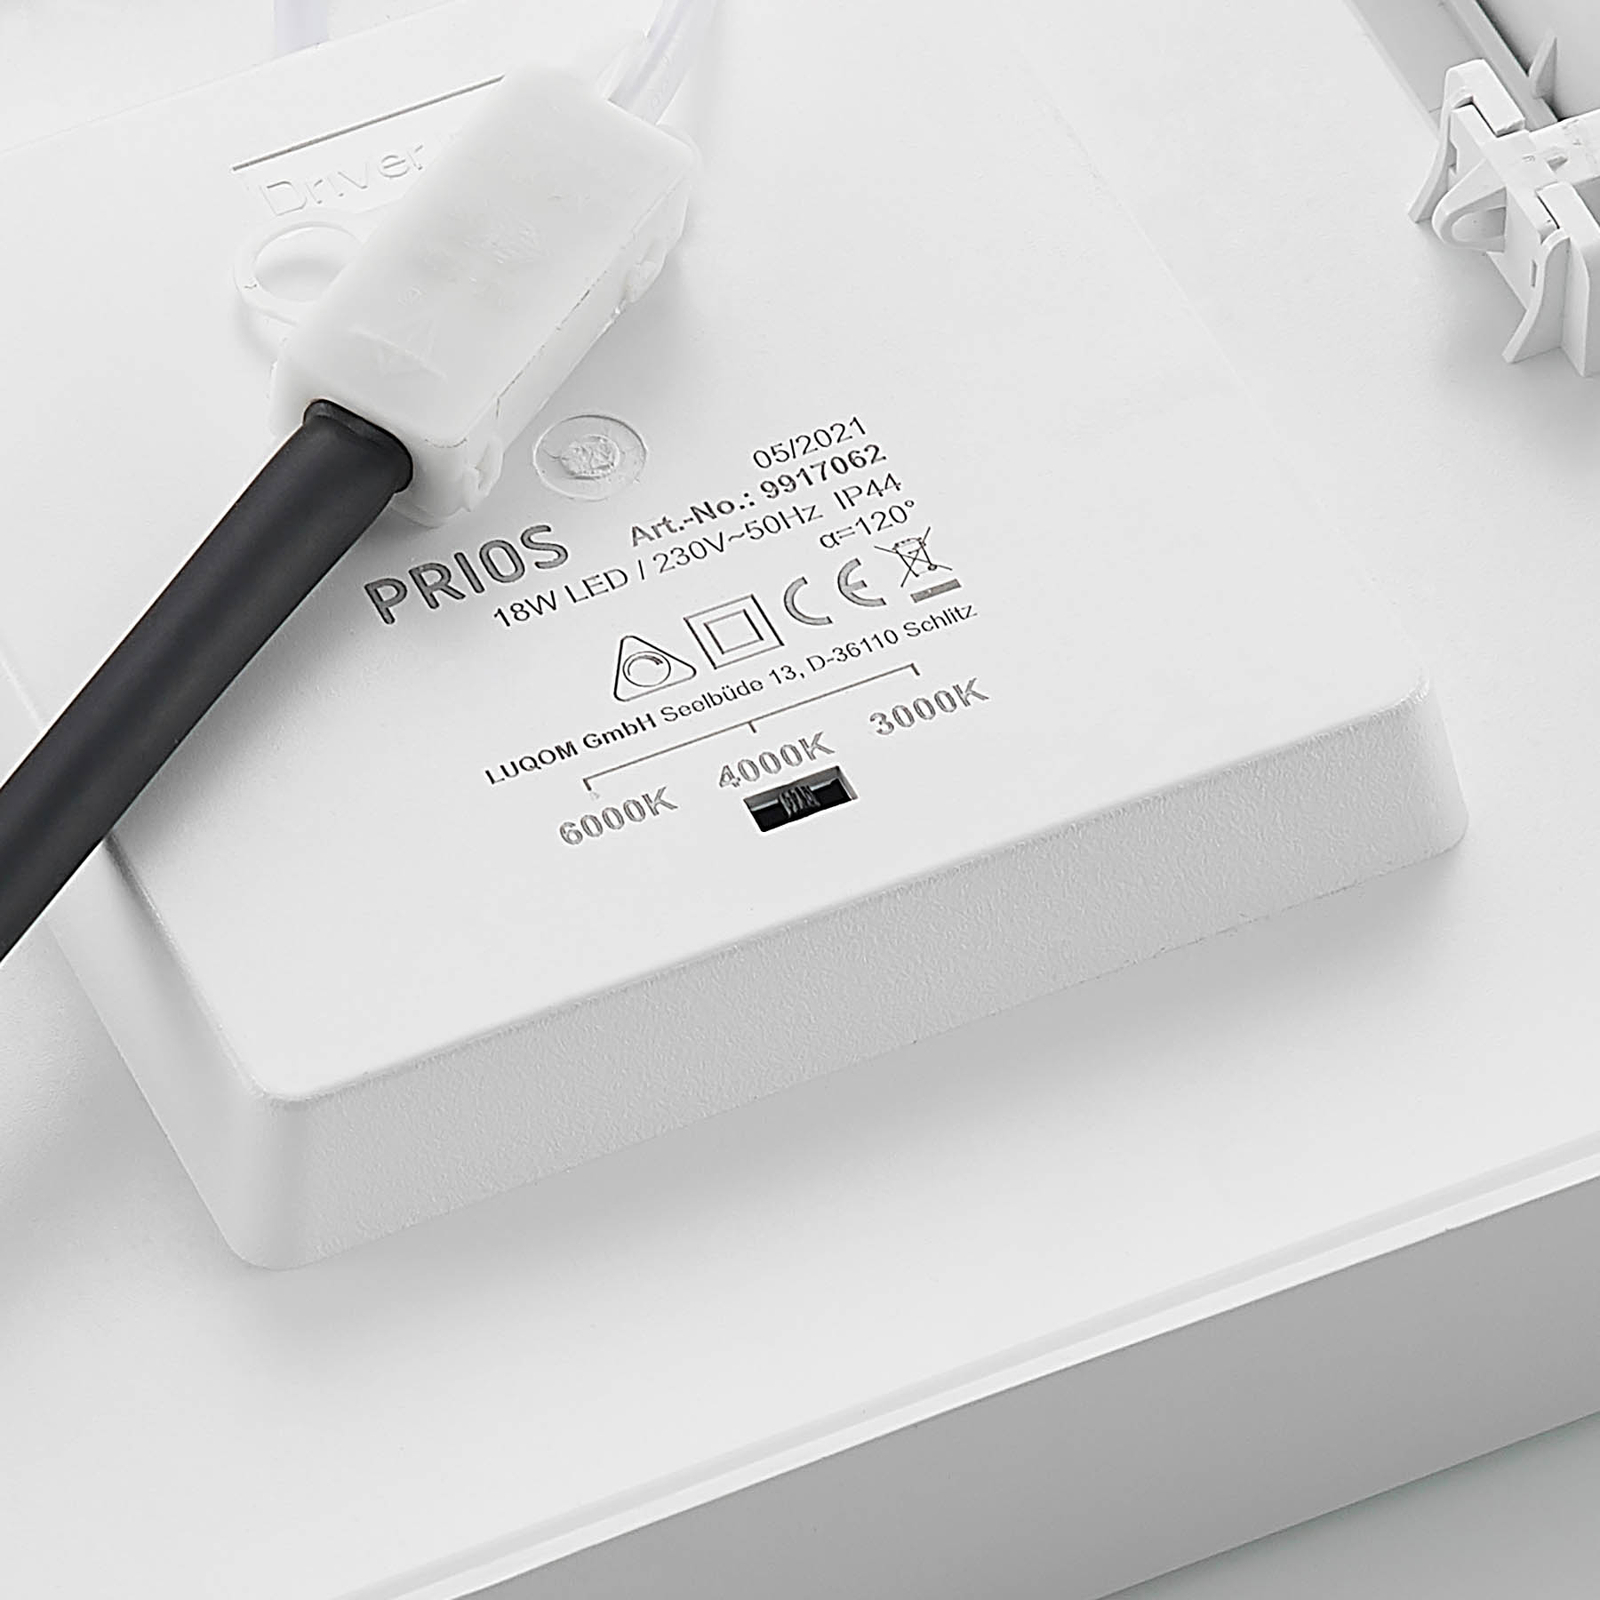 Prios LED-Deckenleuchte Alette, weiß, 22,7 cm, 18W, dimmbar